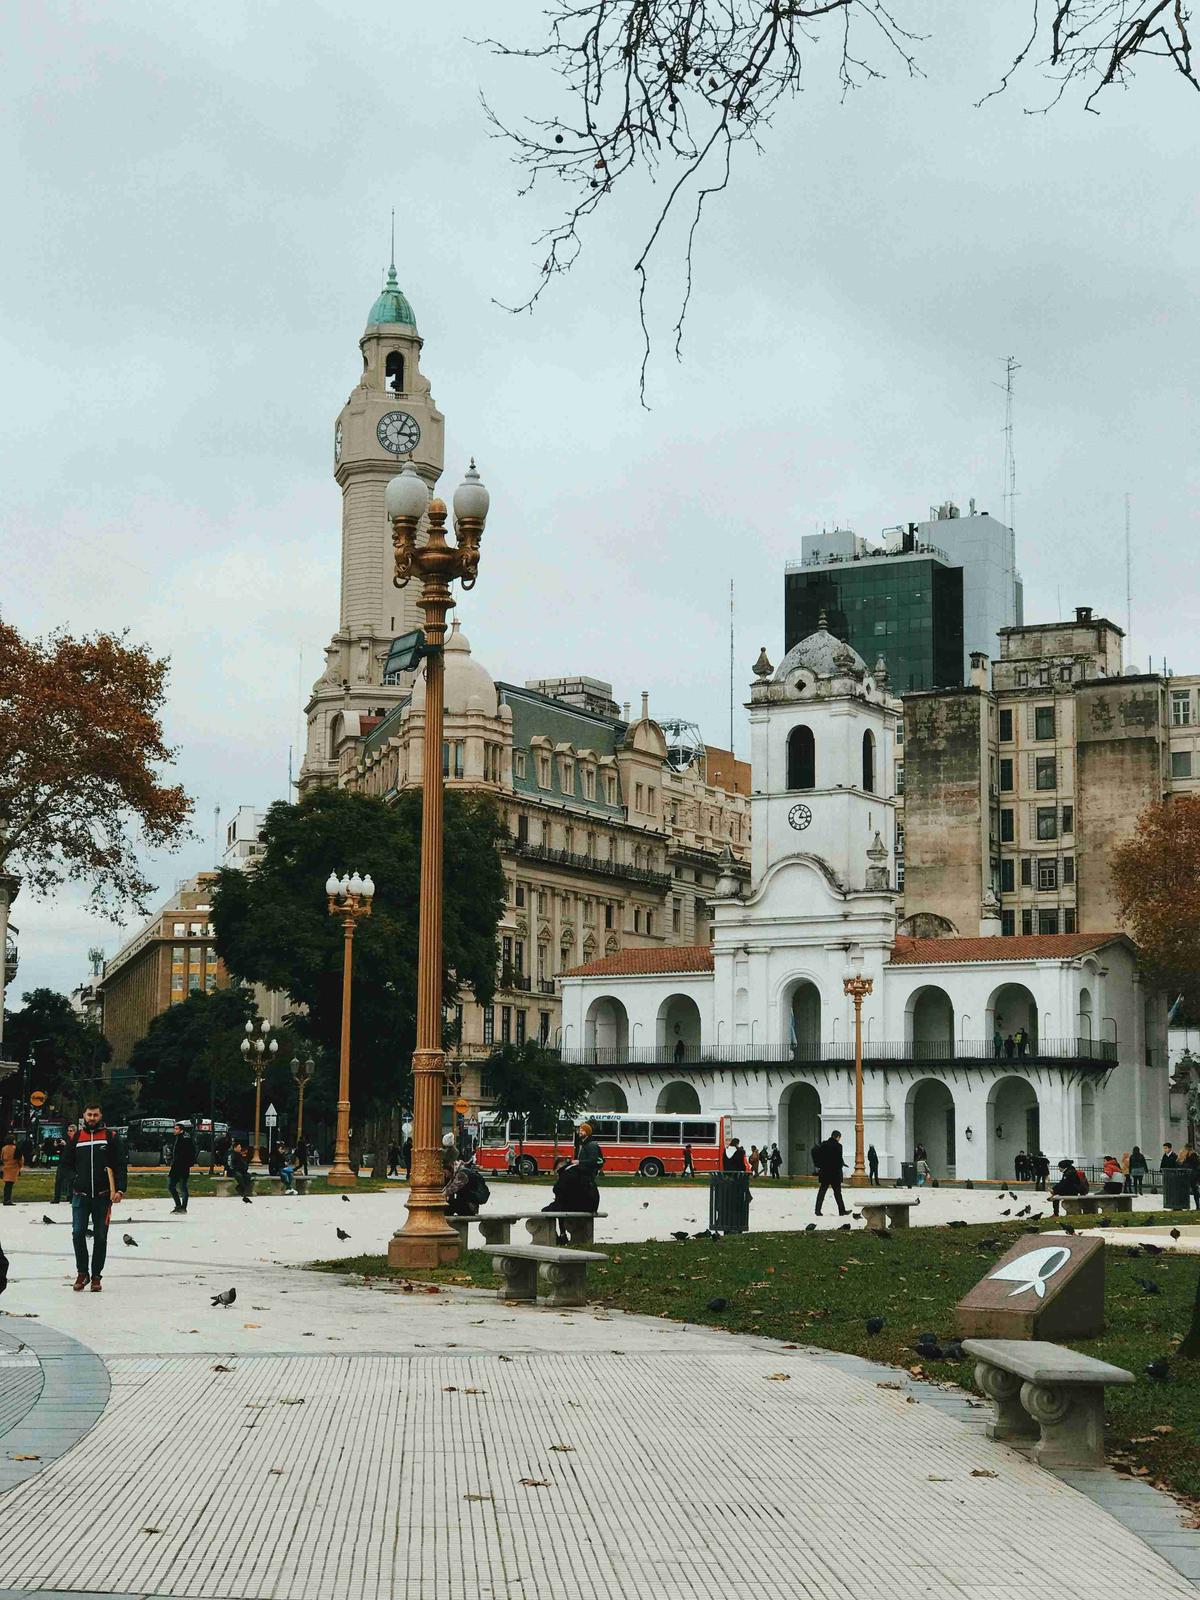 يوم الخريف في ساحة المدينة مع برج الساعة التاريخي